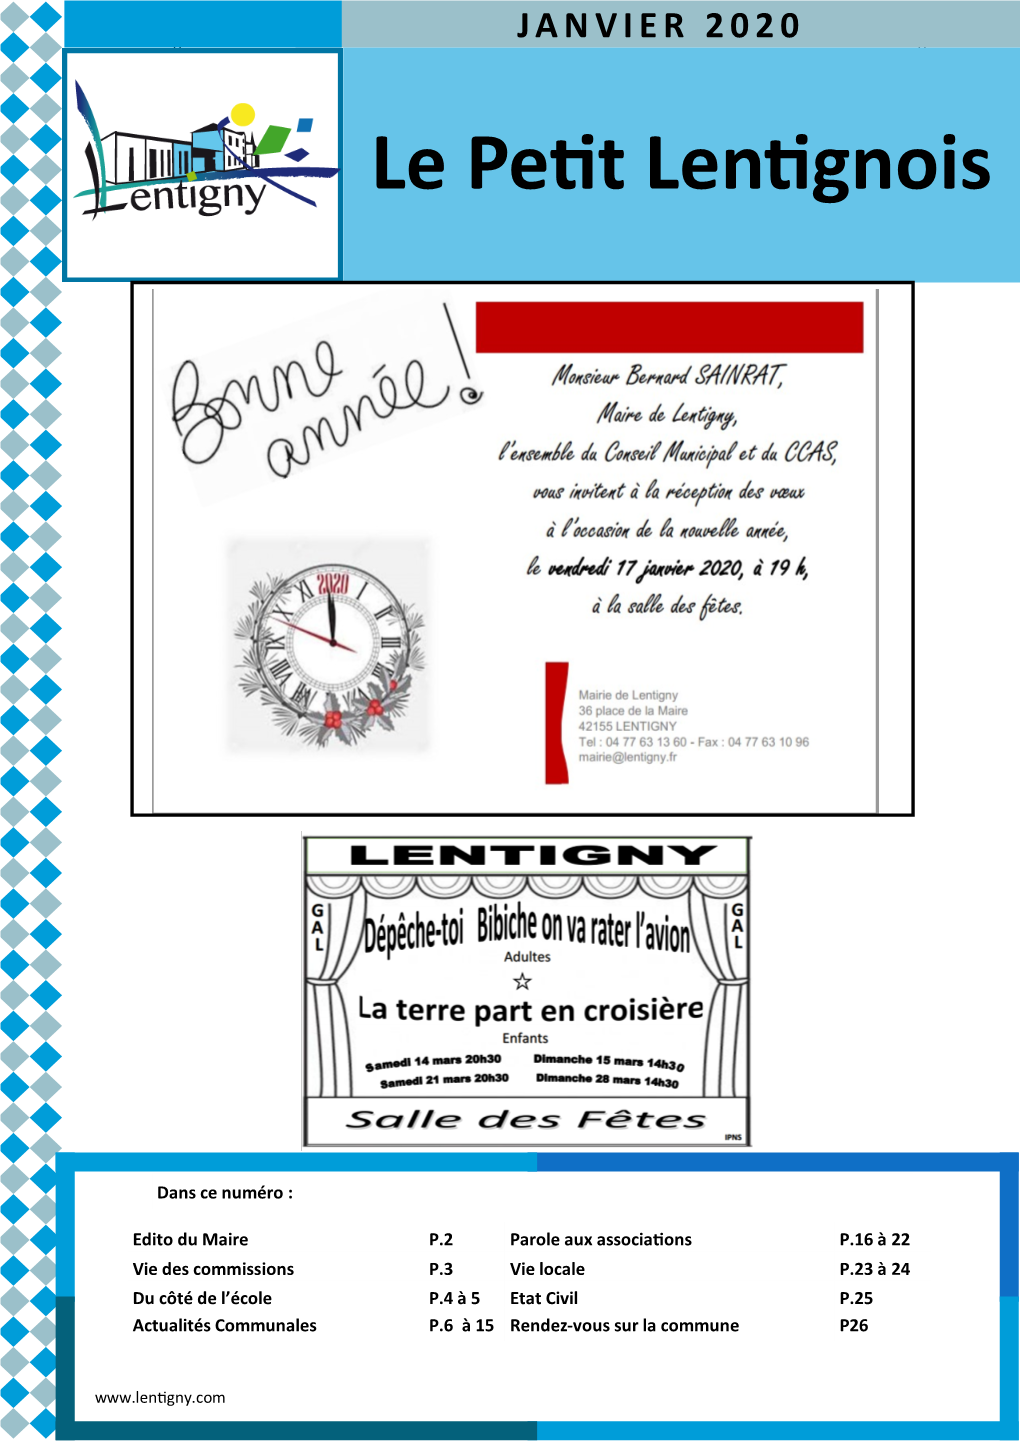 Le Petit Lentignois- JANVIER 2020 JANVIER 2020 Page Le Petit Lentignois